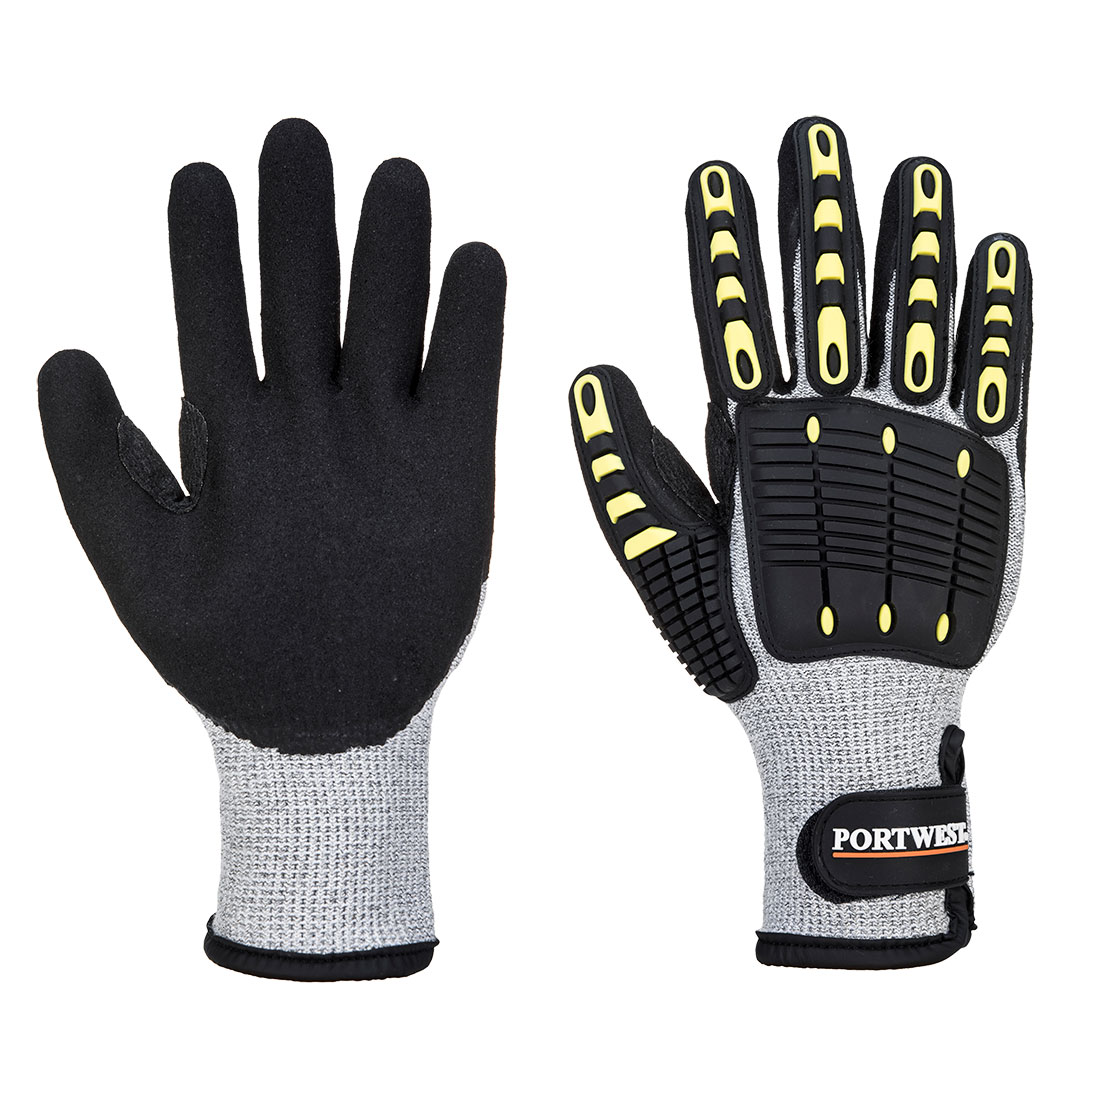 Anti Impact Cut Resistant Thermal Glove - Grey/Black